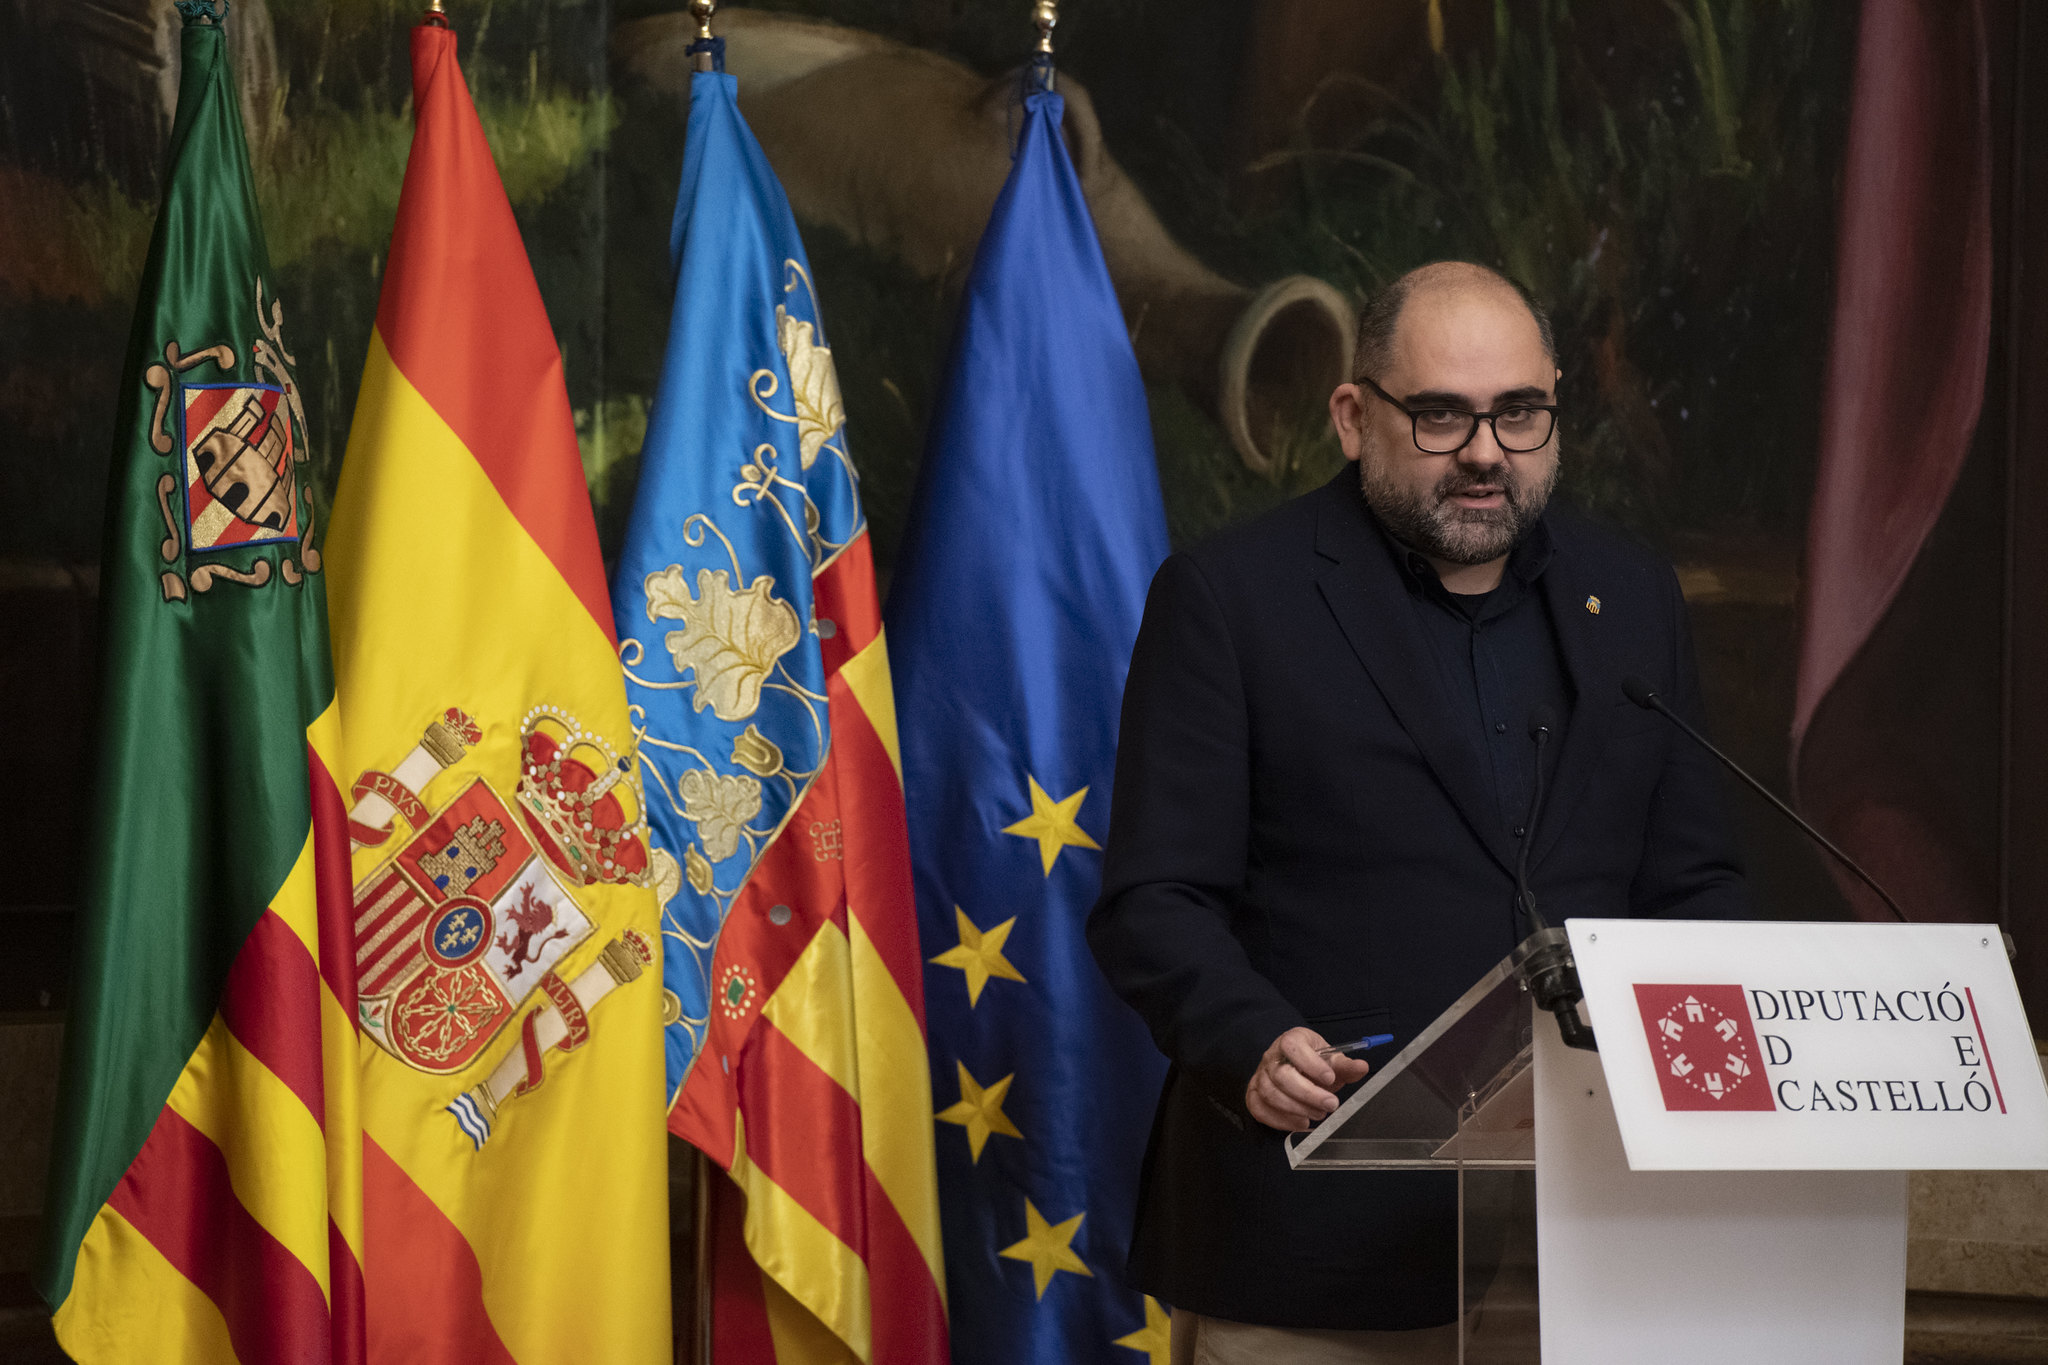 La Diputación de Castellón renueva su convenio con la Jaume I y duplica el presupuesto para la segunda edición de Talent Rural